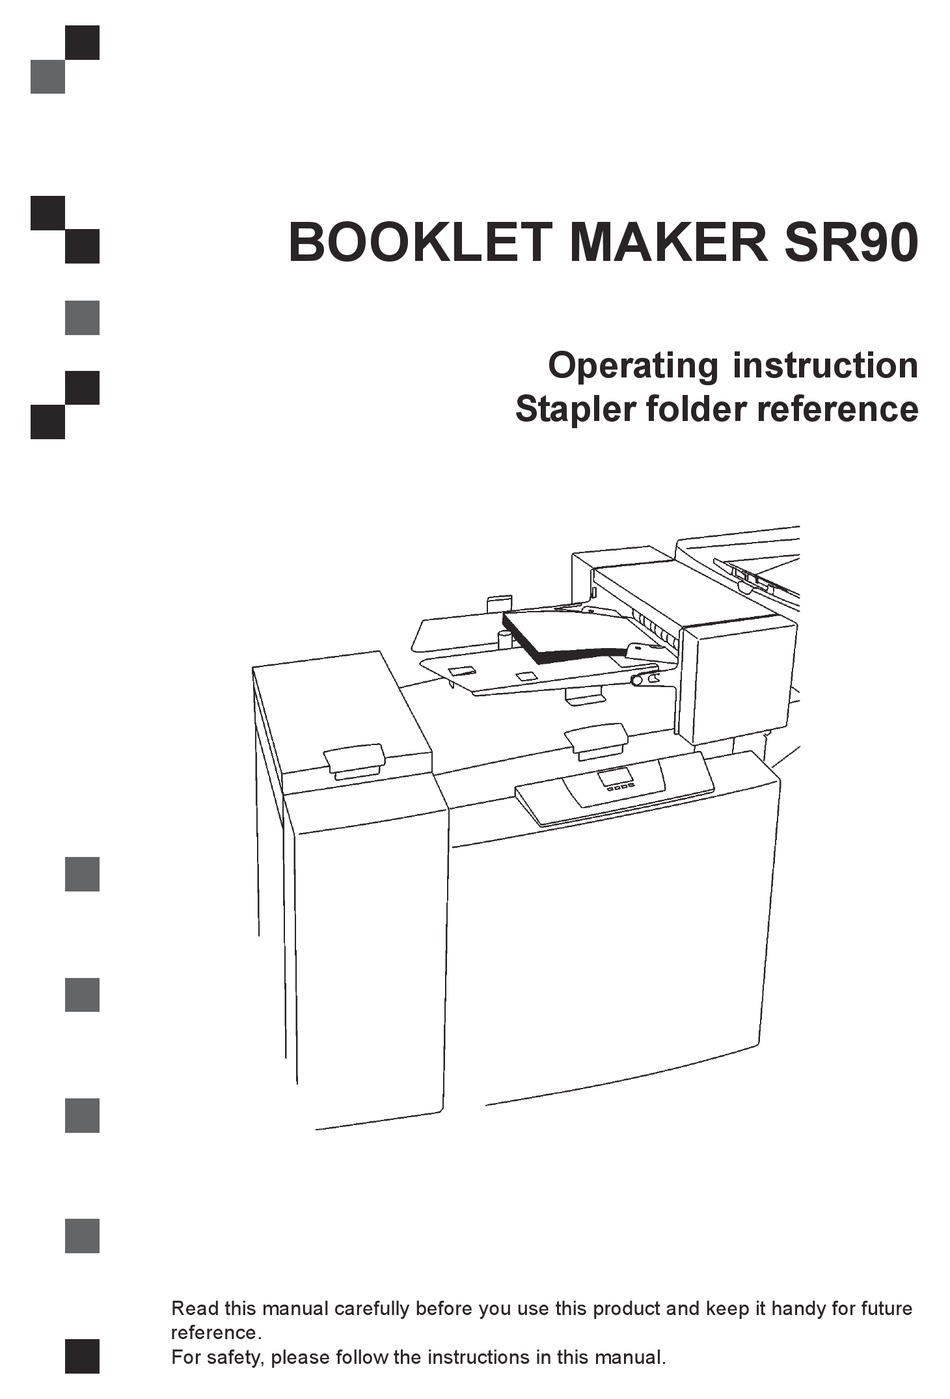 plockmatic booklet maker system bm500